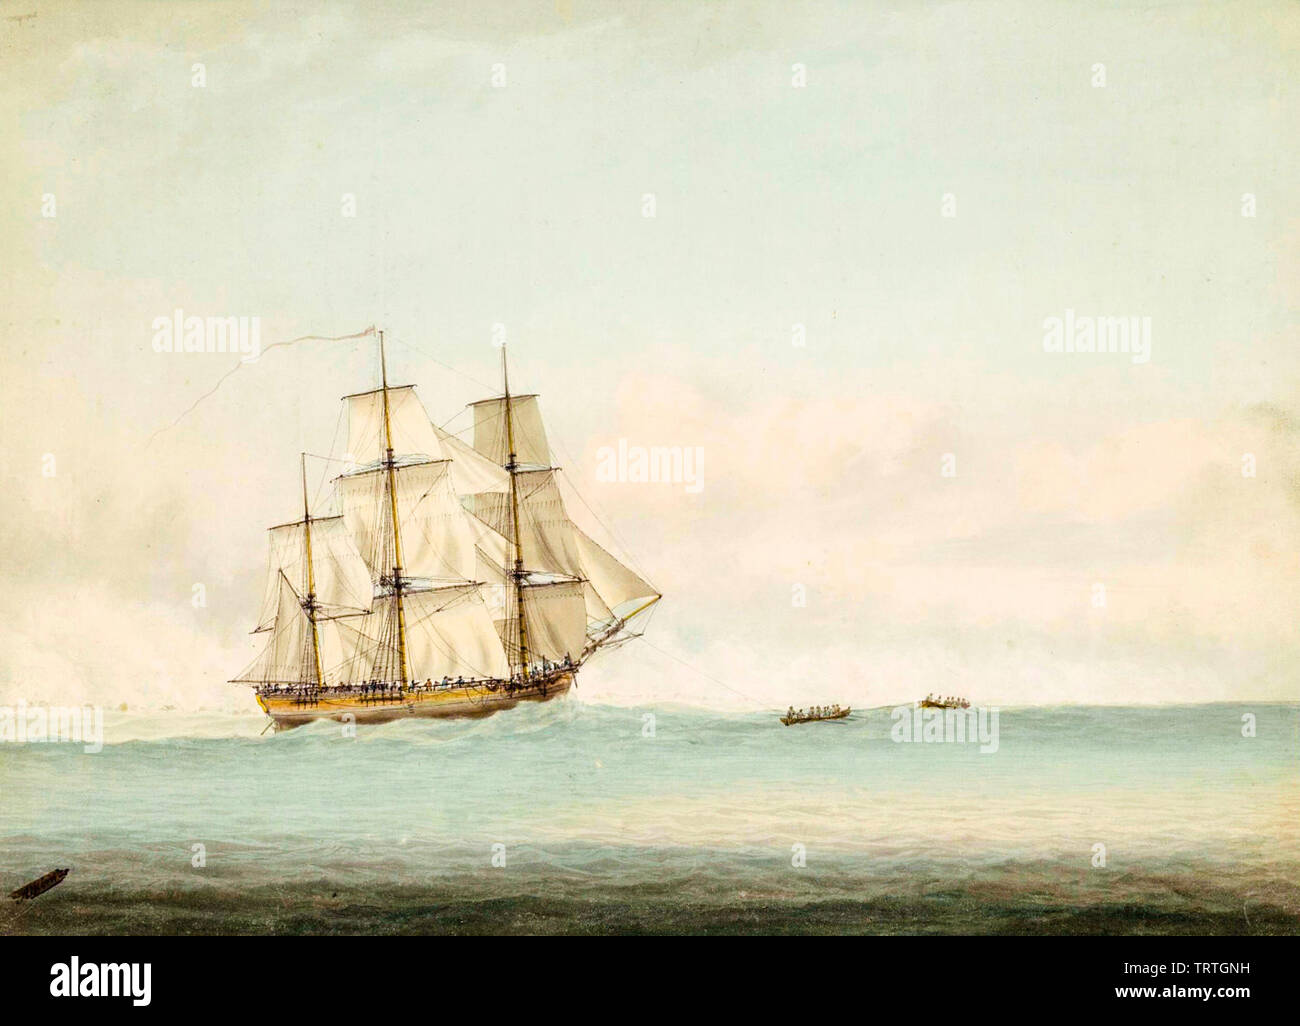 HMS Endeavour au large de la côte de la Nouvelle-Hollande (Australie), peinture, 1794 Banque D'Images